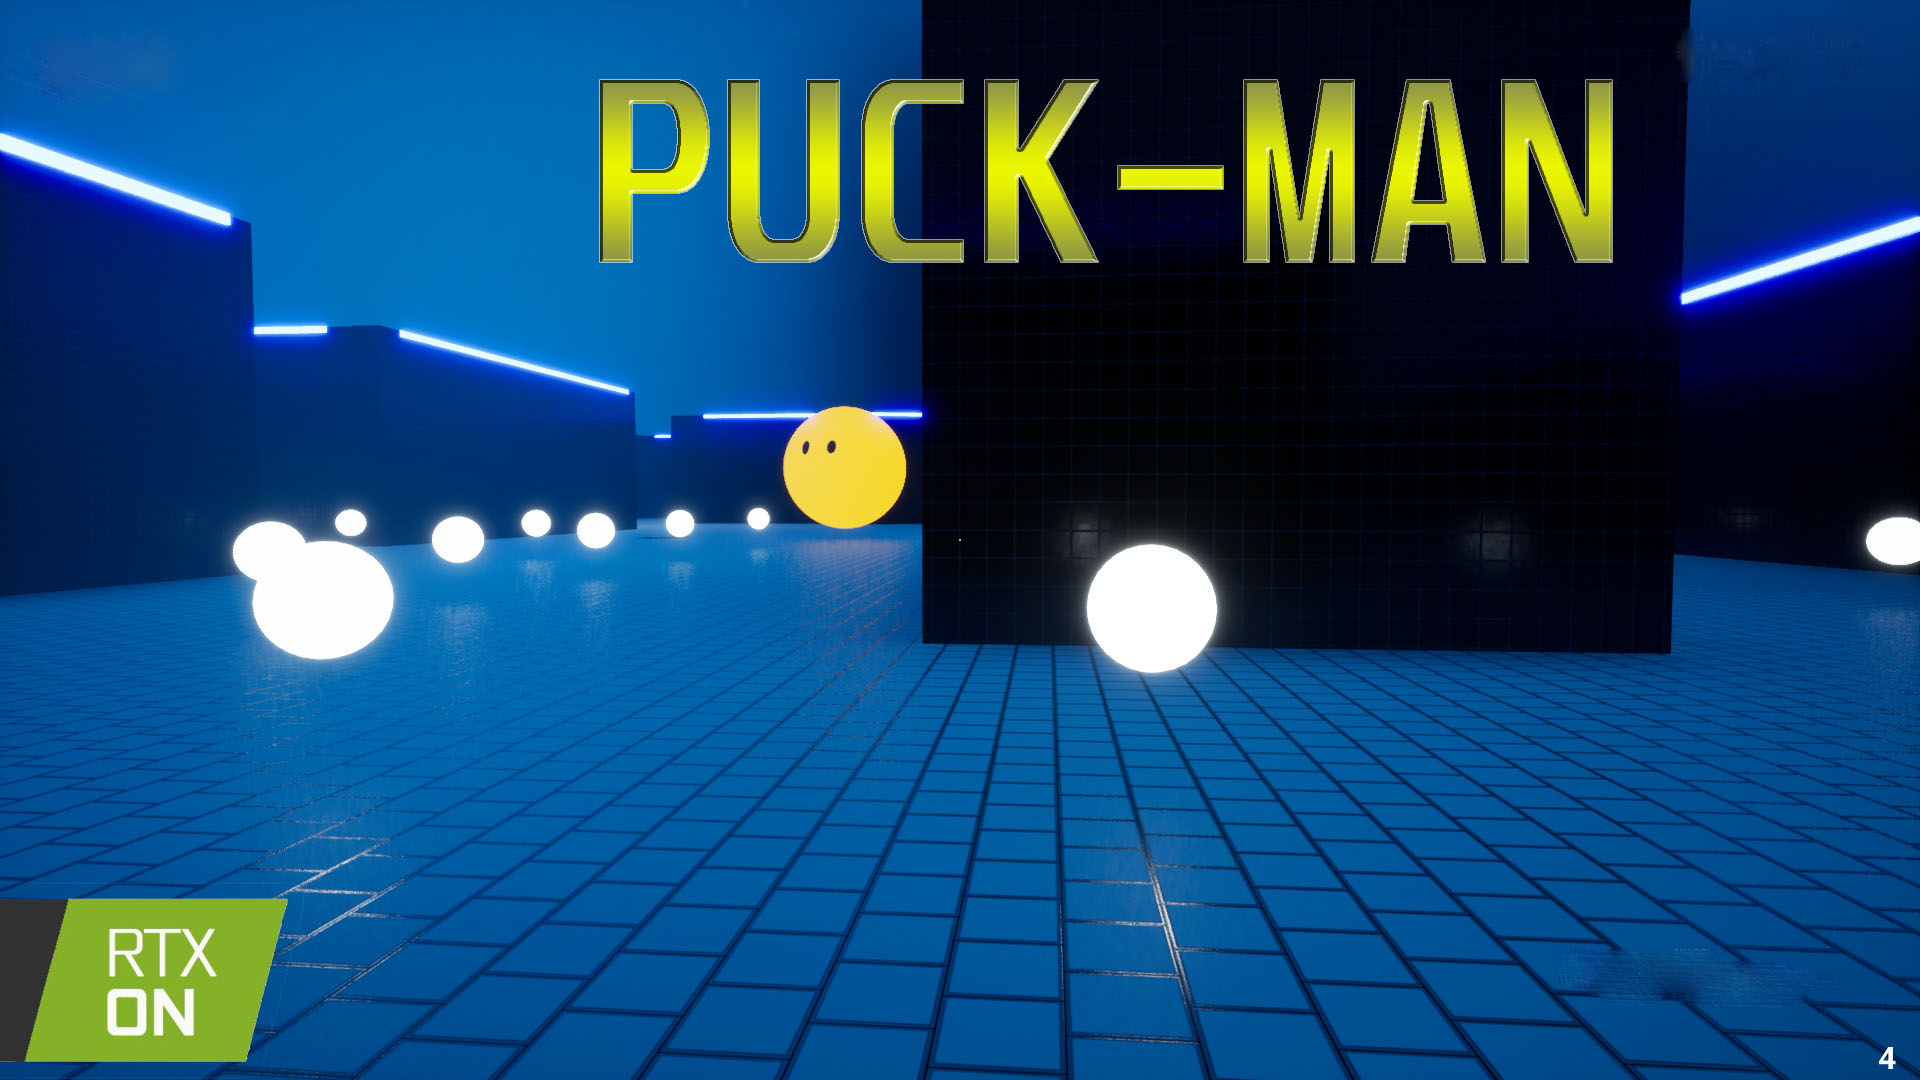 Puck-man